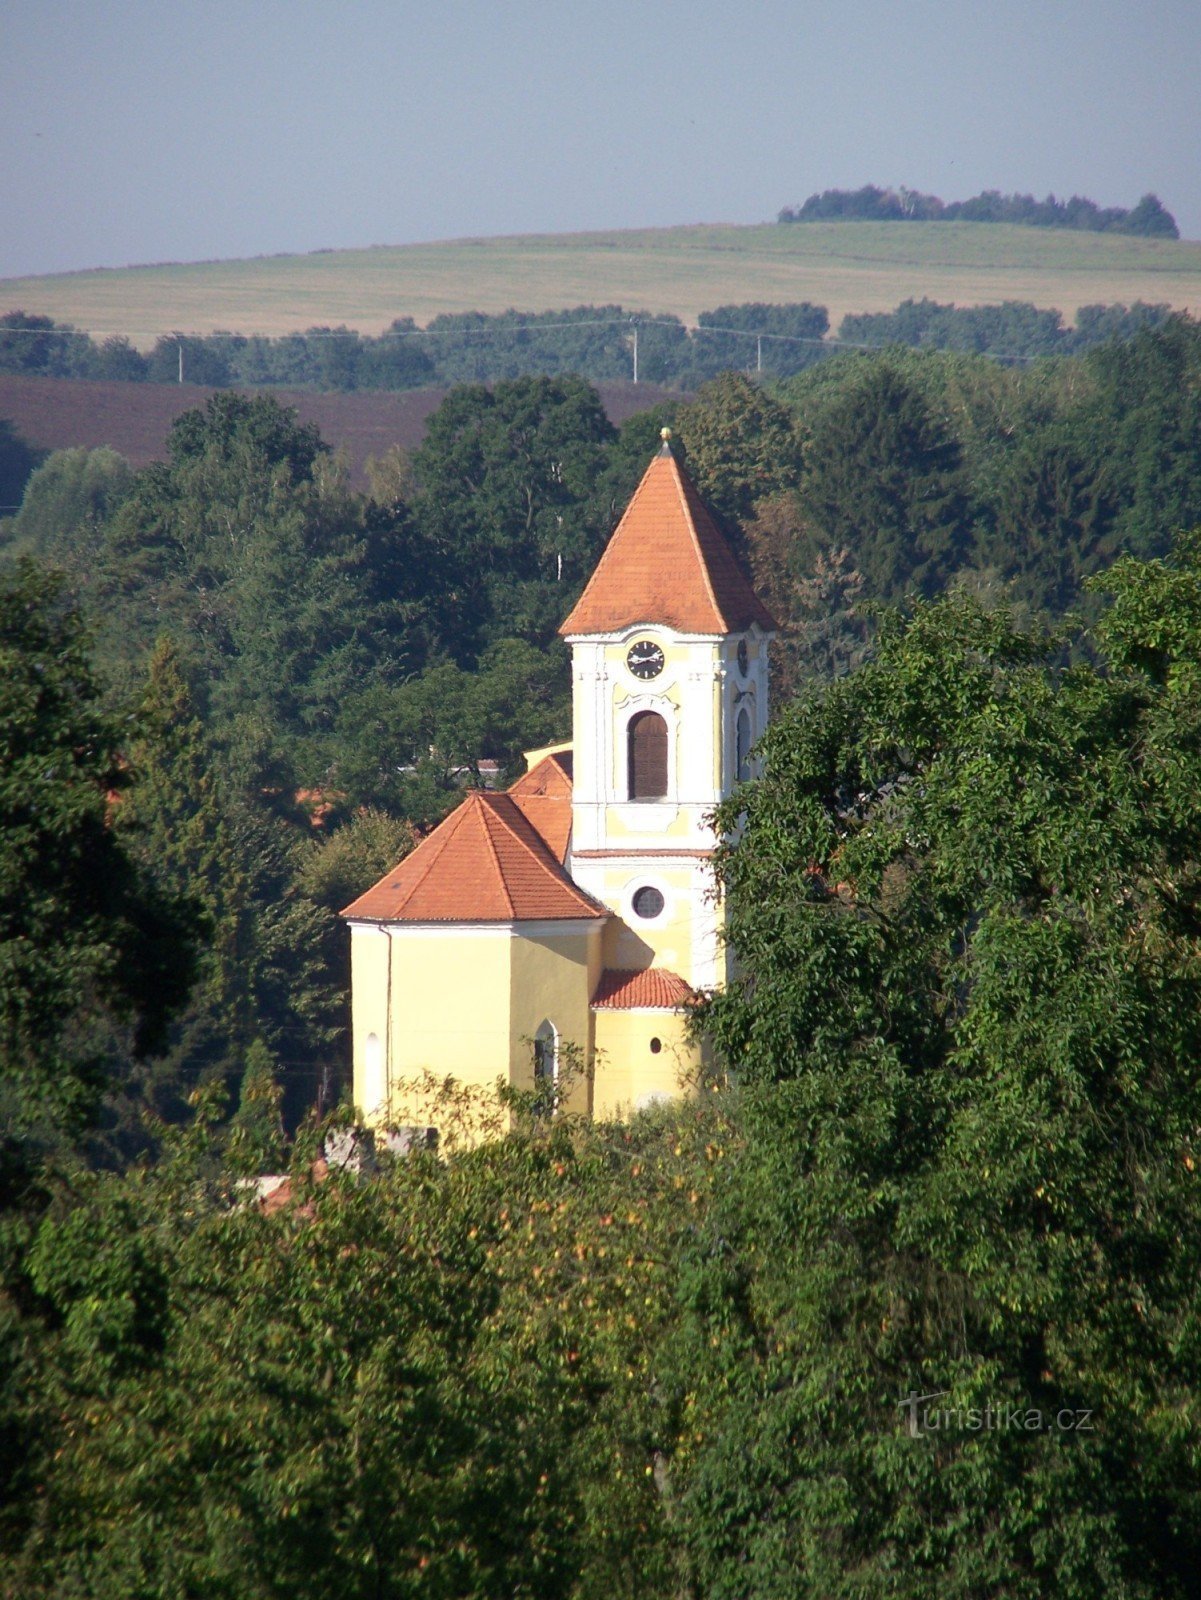 Igreja de S. Šimon e Judy em Bystřice perto de Benešov